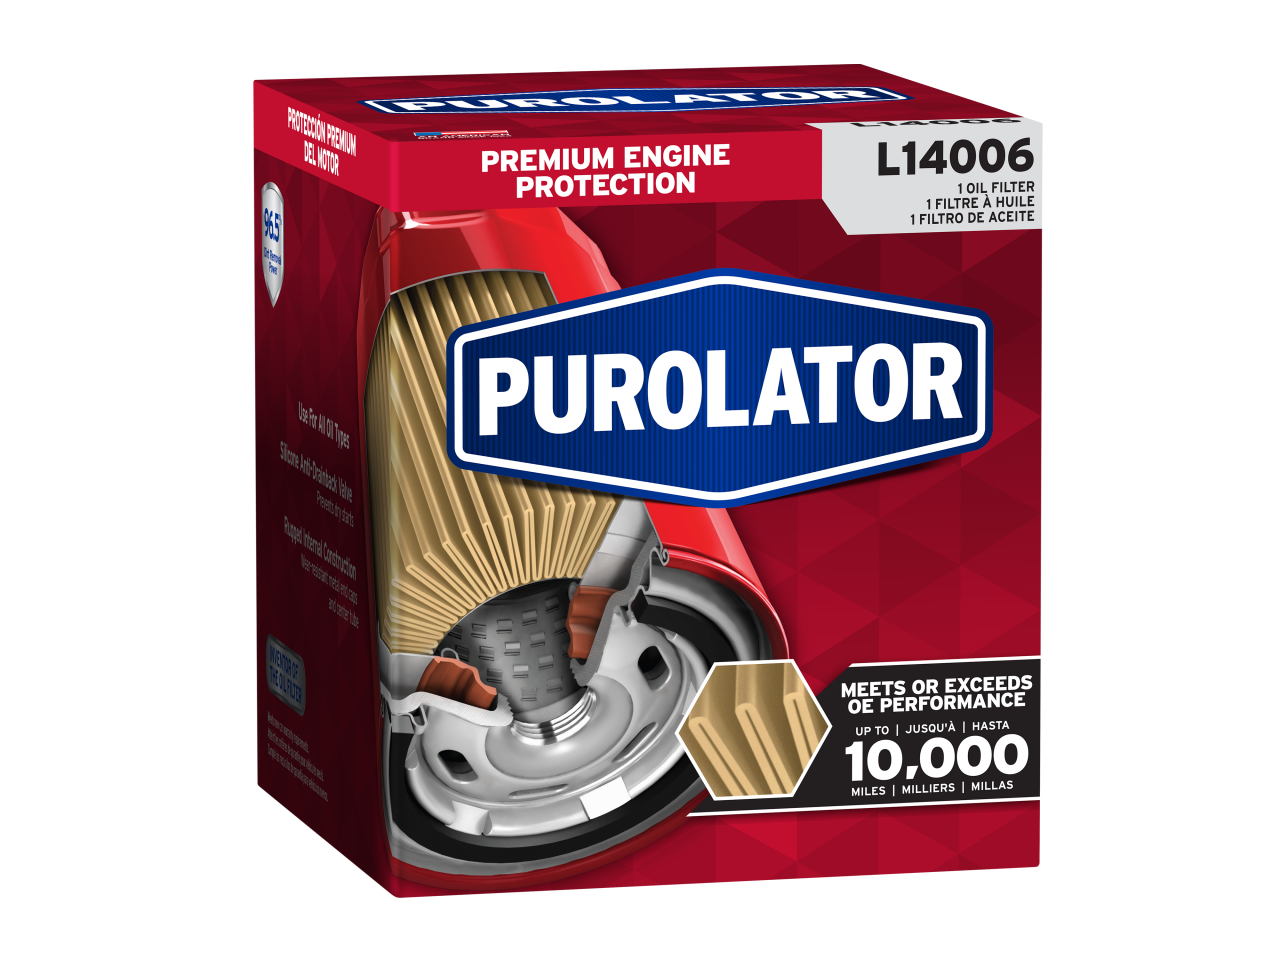 Los filtros de aceite Purolator están diseñados para lograr el rendimiento original de fábrica hasta un máximo de 5000 millas de protección premium.